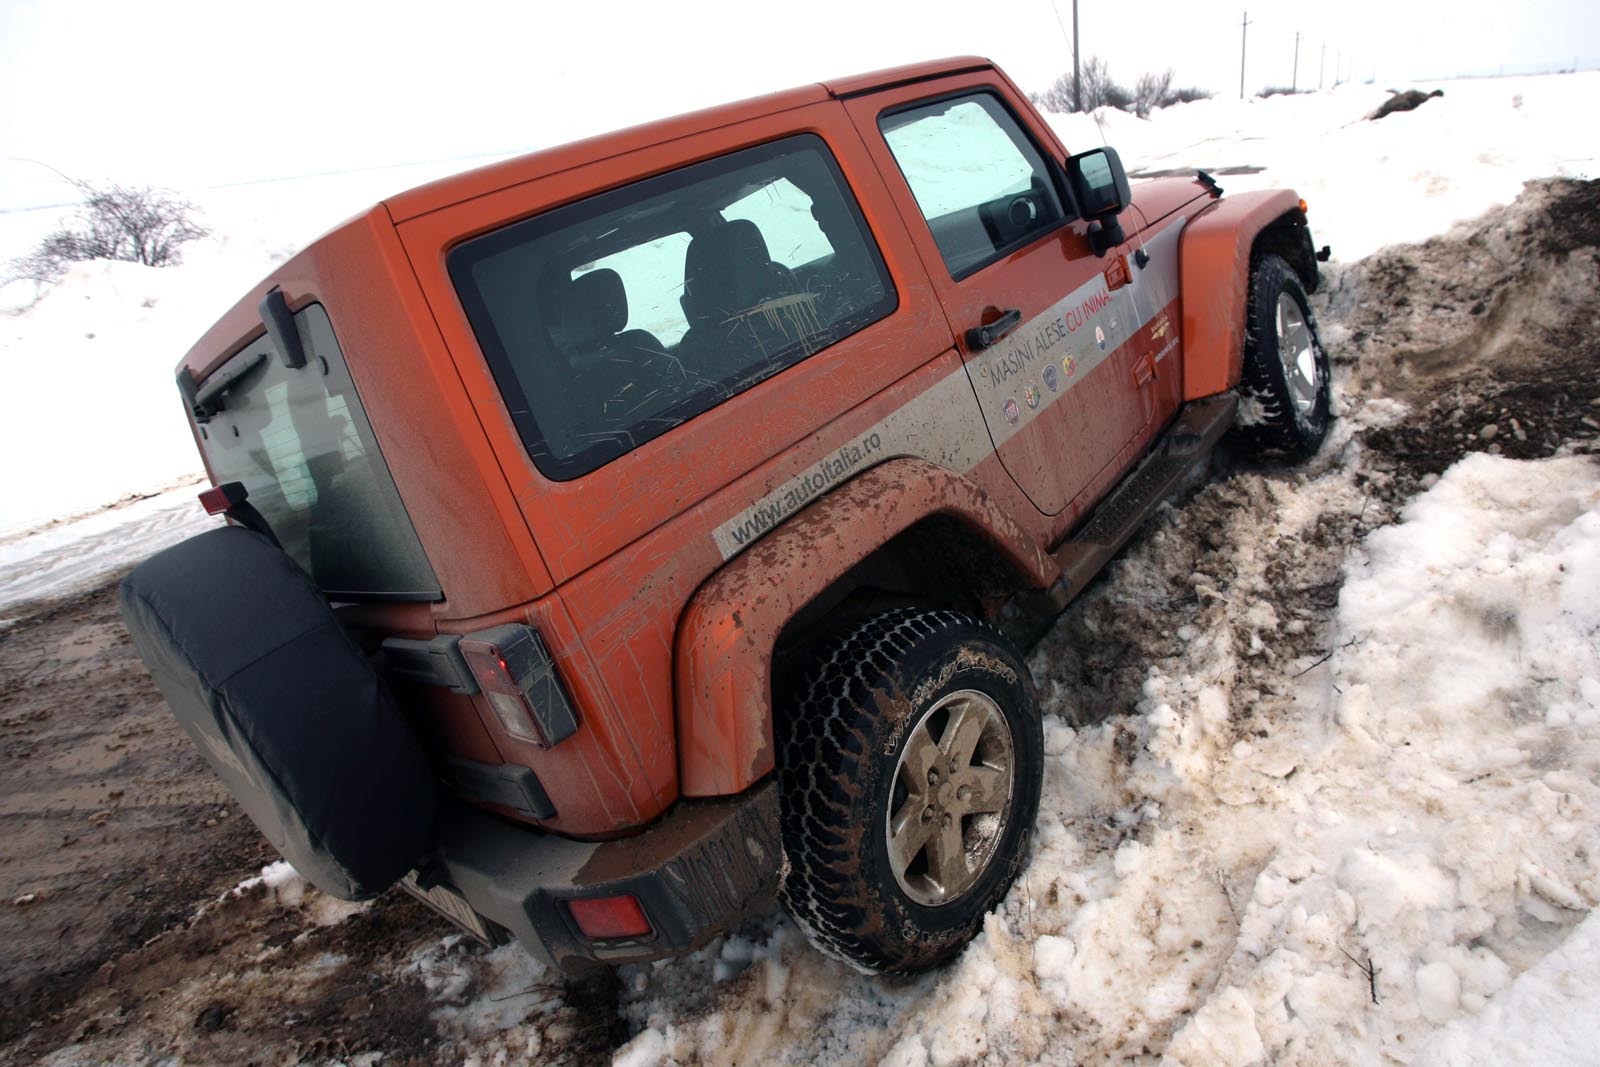 Jeep Wrangler are o garda la sol de 26 cm, deci accesul in masina e ceva mai greoi